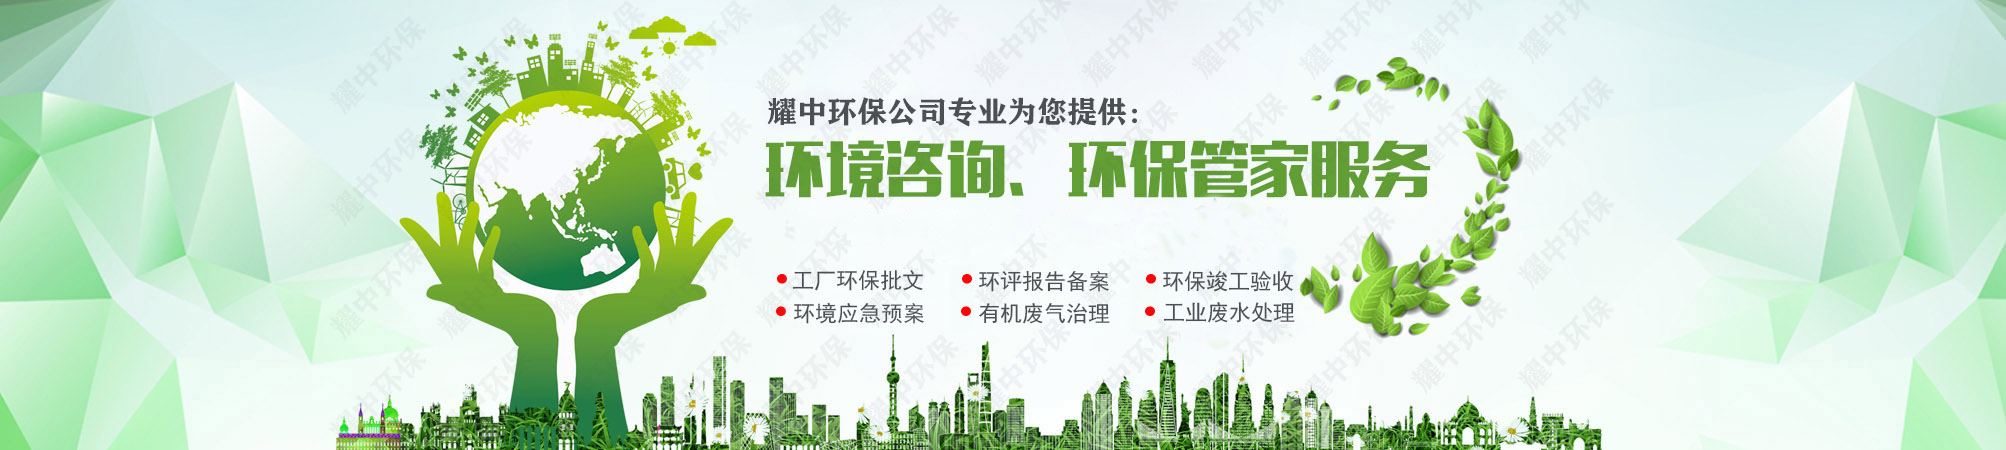 深圳专业废气处理公司,废气排放处理设备,产品远达国家标准